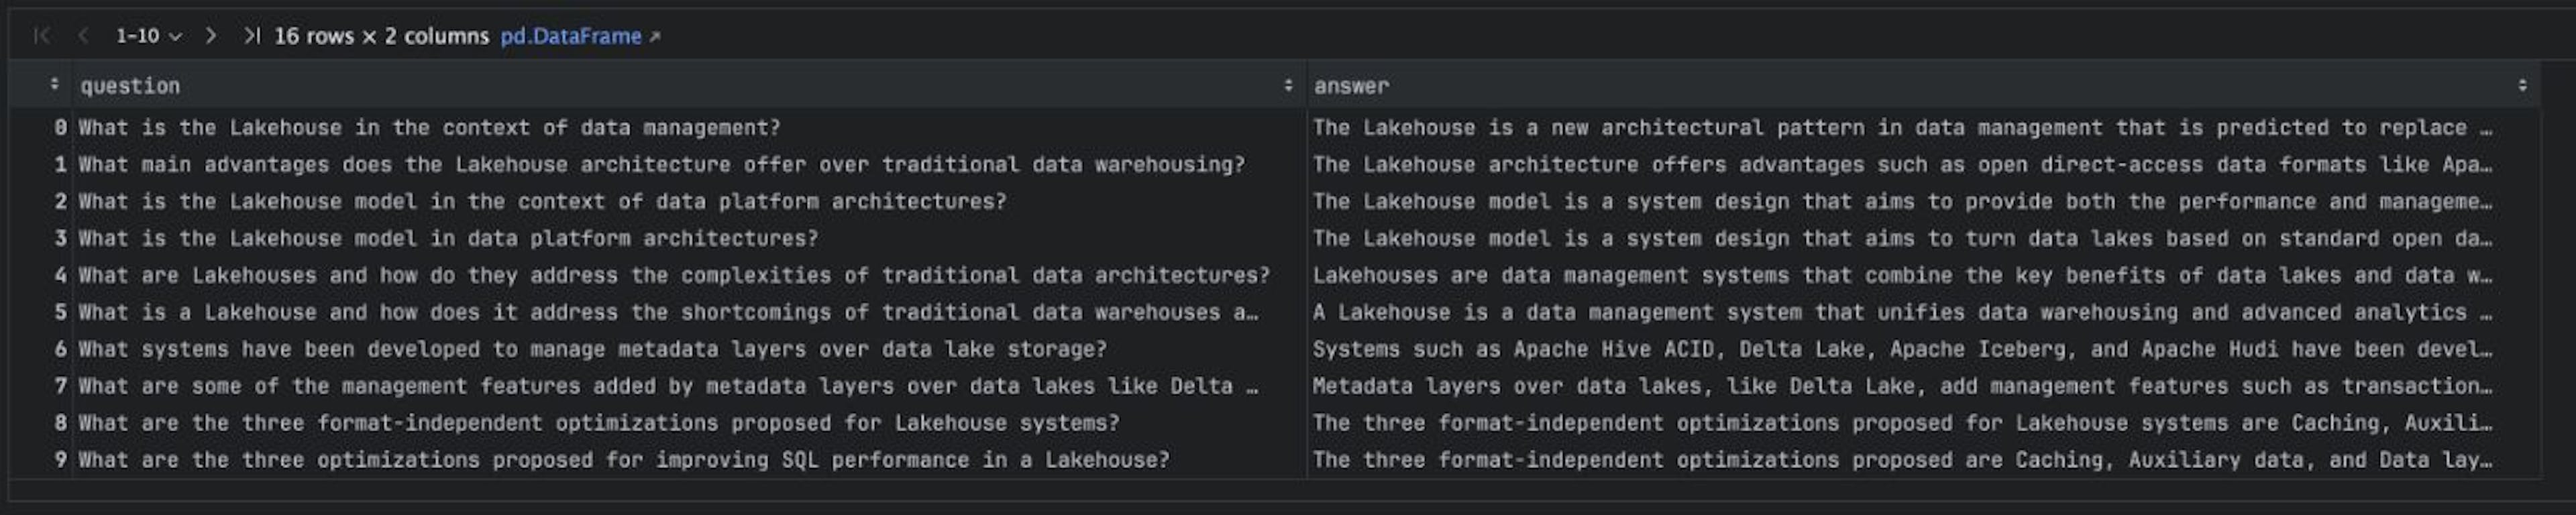 Синтезированный корпус контроля качества для статьи «Lakehouse: новое поколение открытых платформ, которые унифицируют хранилище данных и расширенную аналитику».